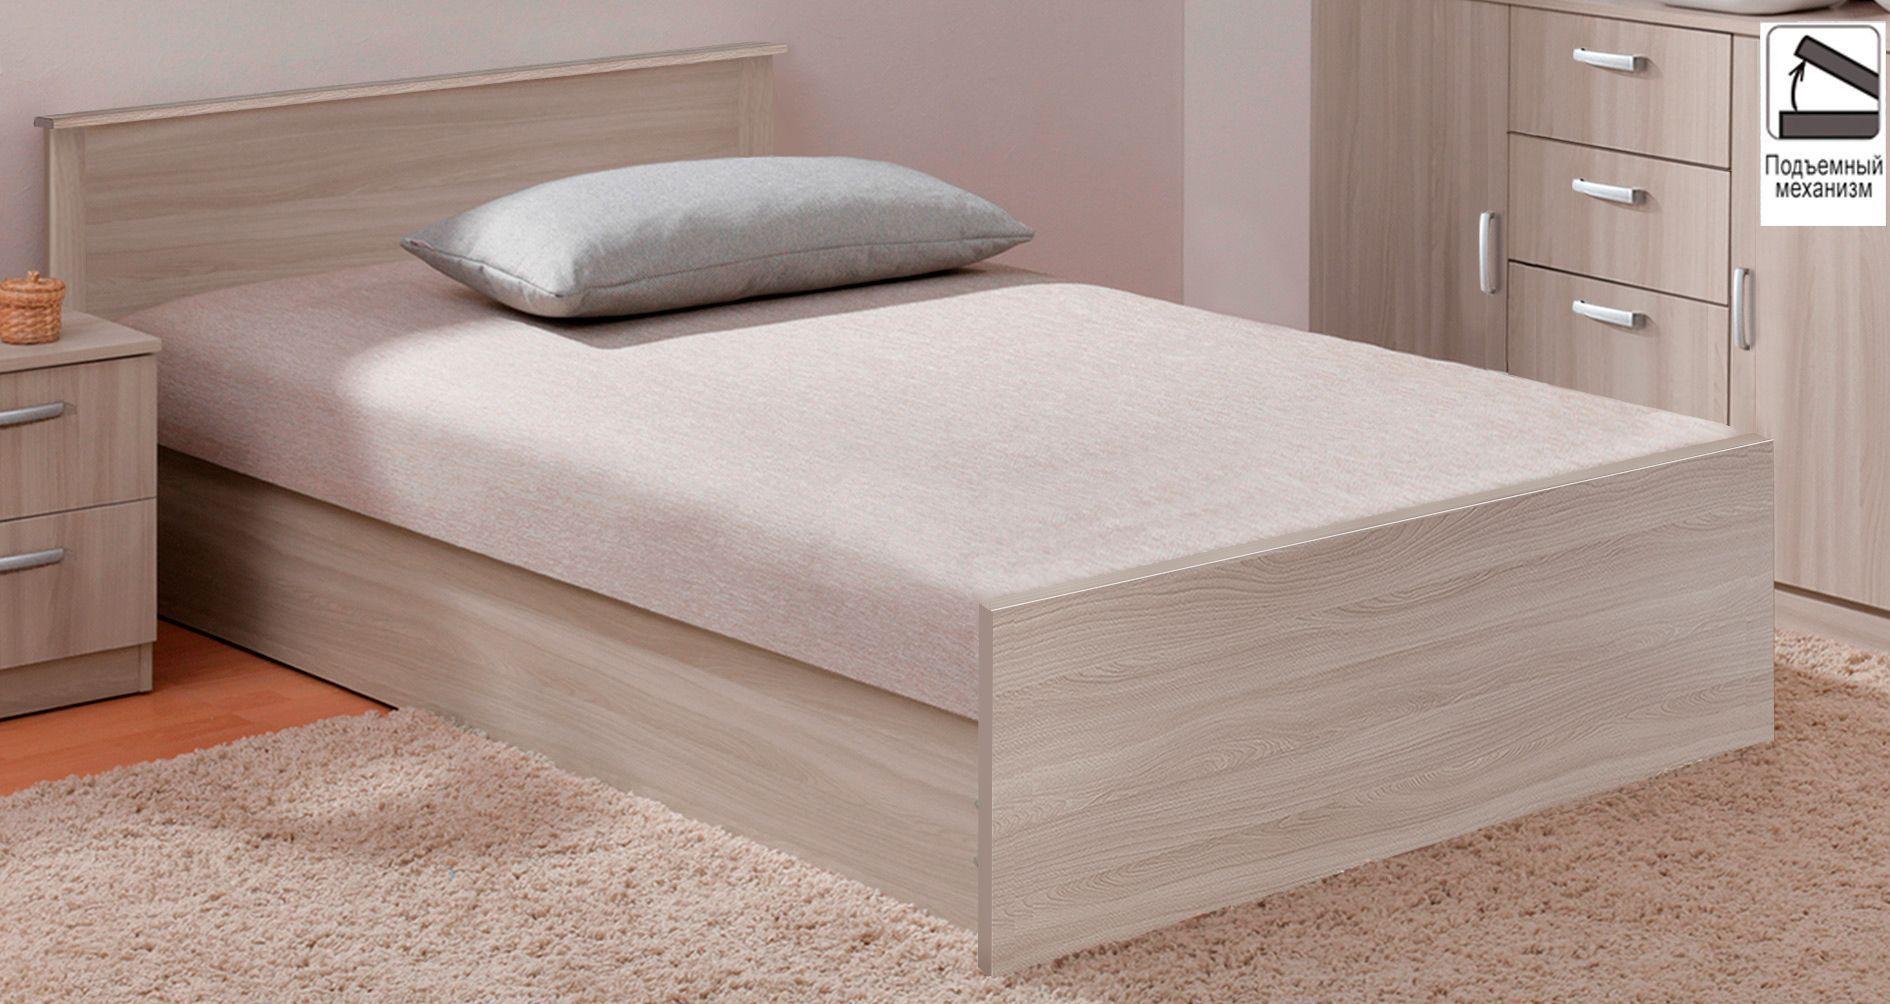 Кровать жасмин с подъемным механизмом